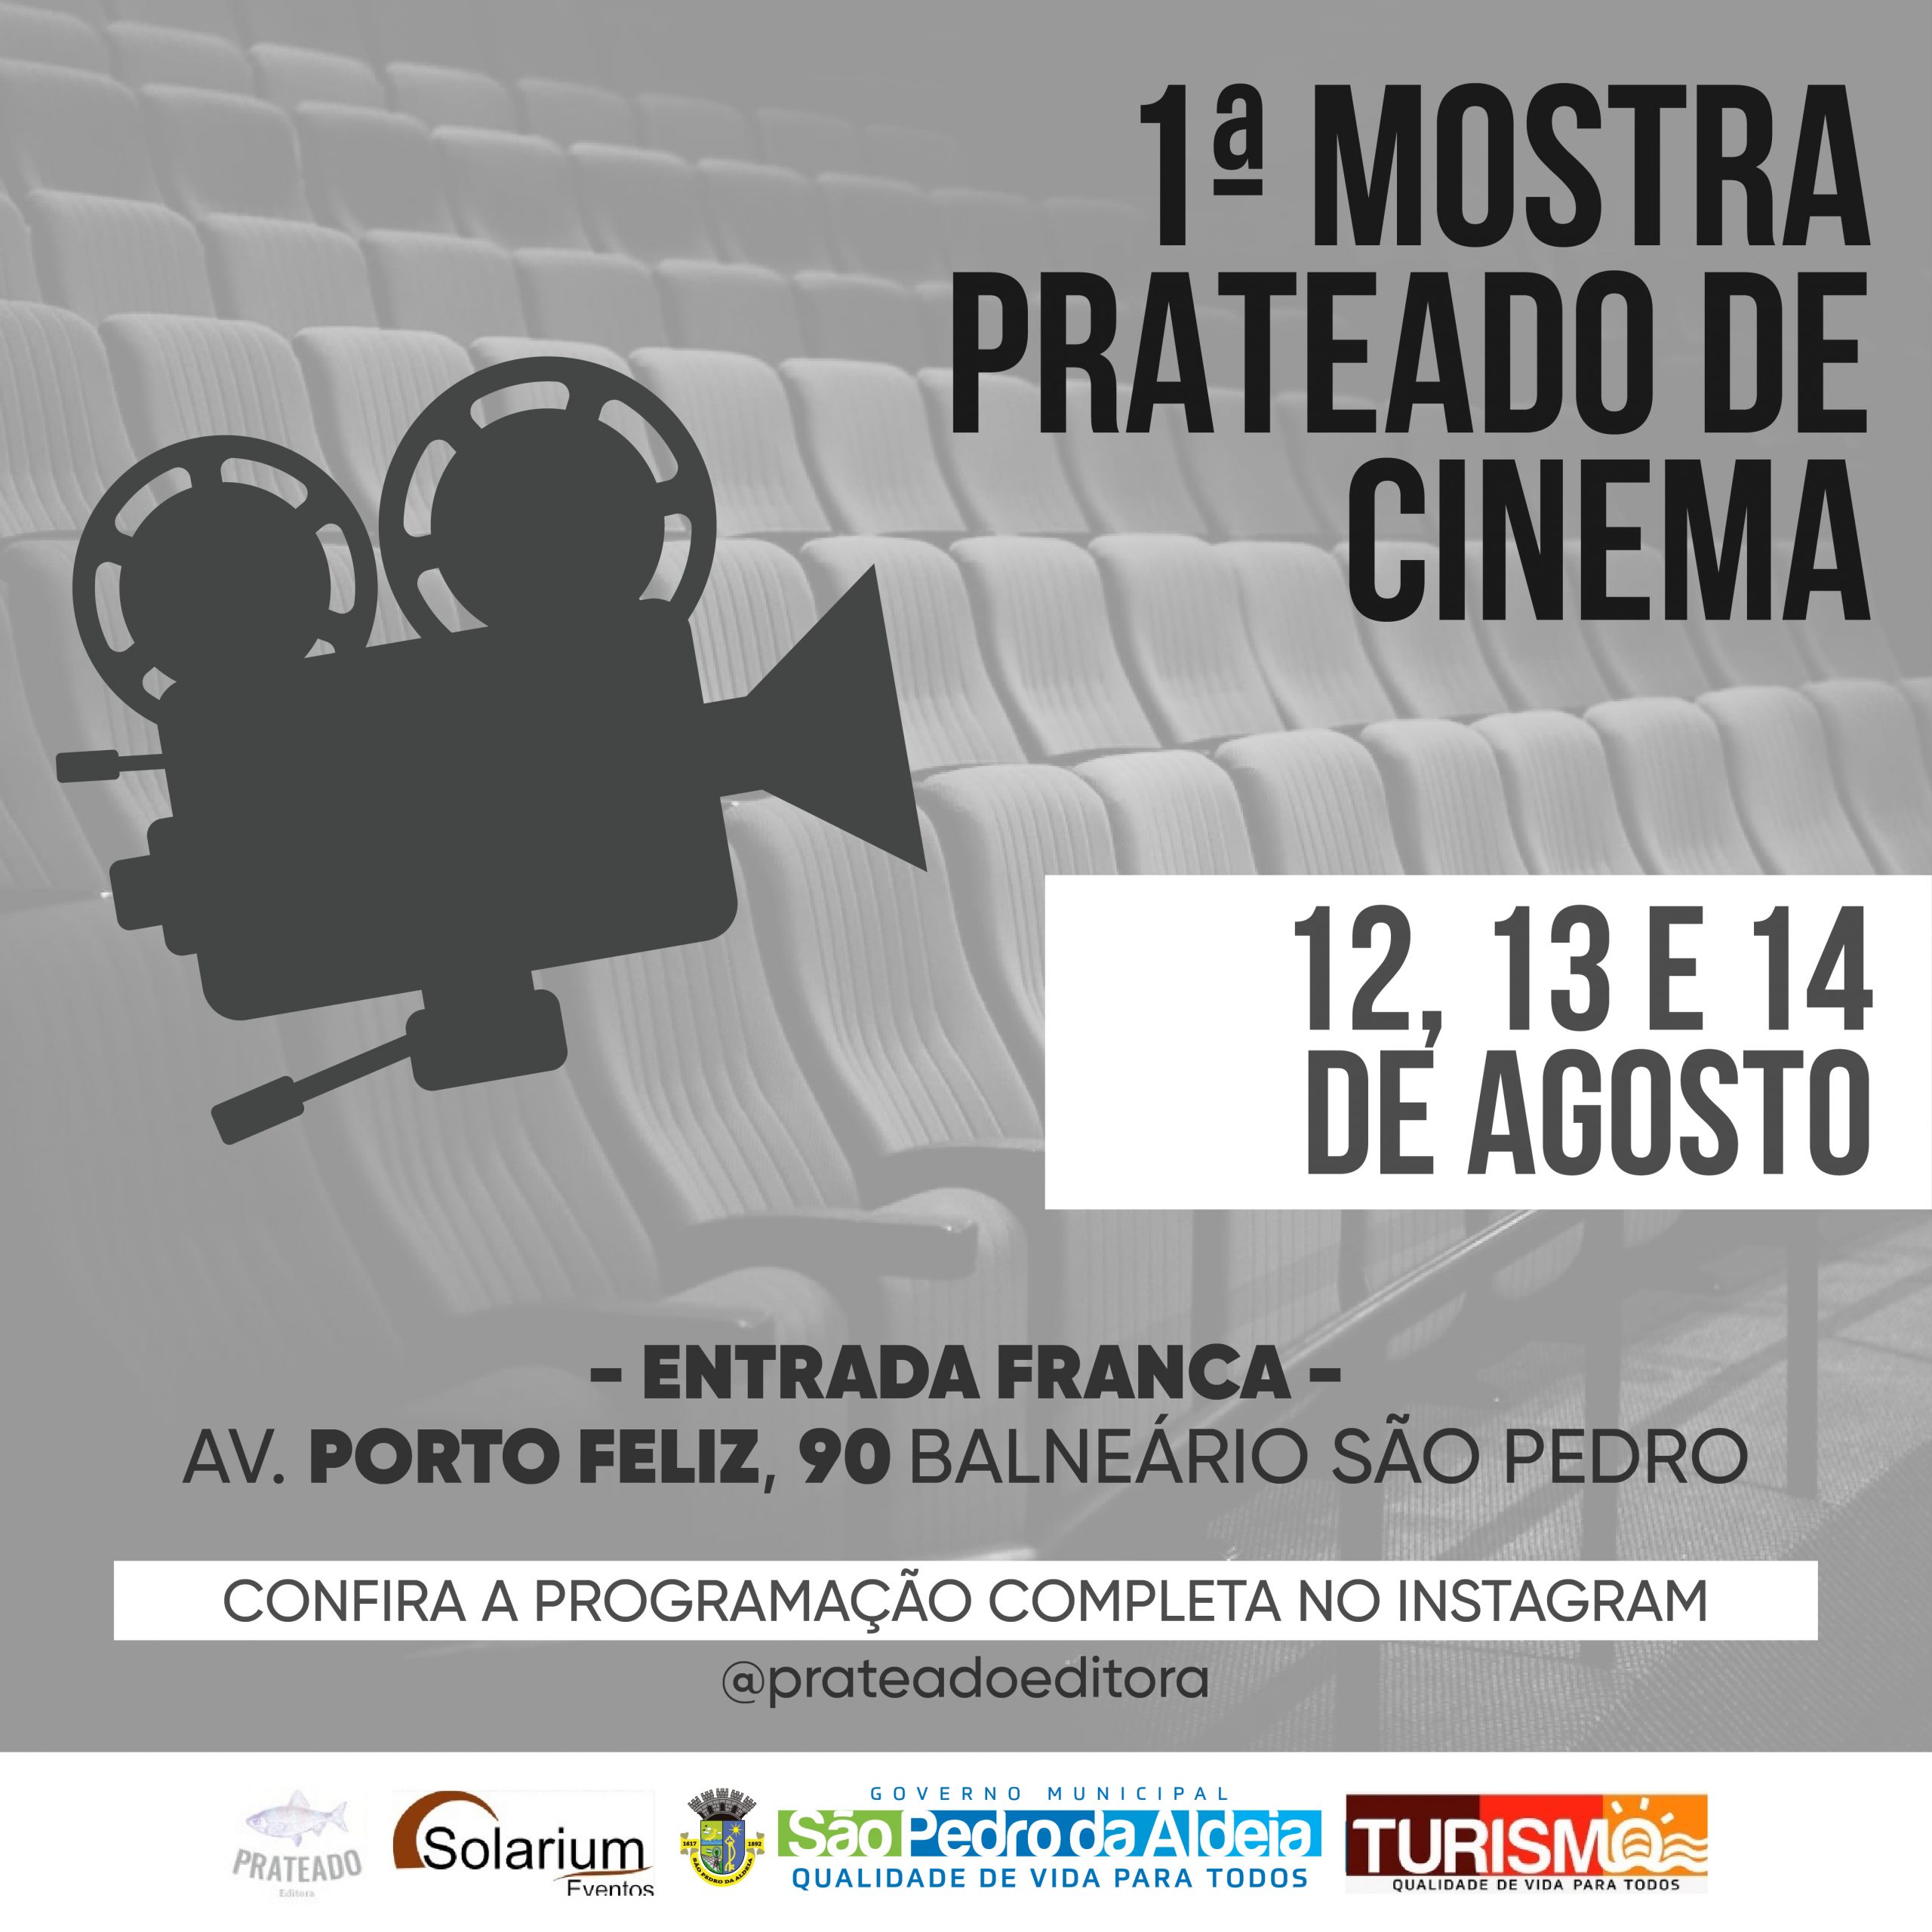 São Pedro da Aldeia recebe mostra de cinema nos dias 12, 13 e 14 de agosto